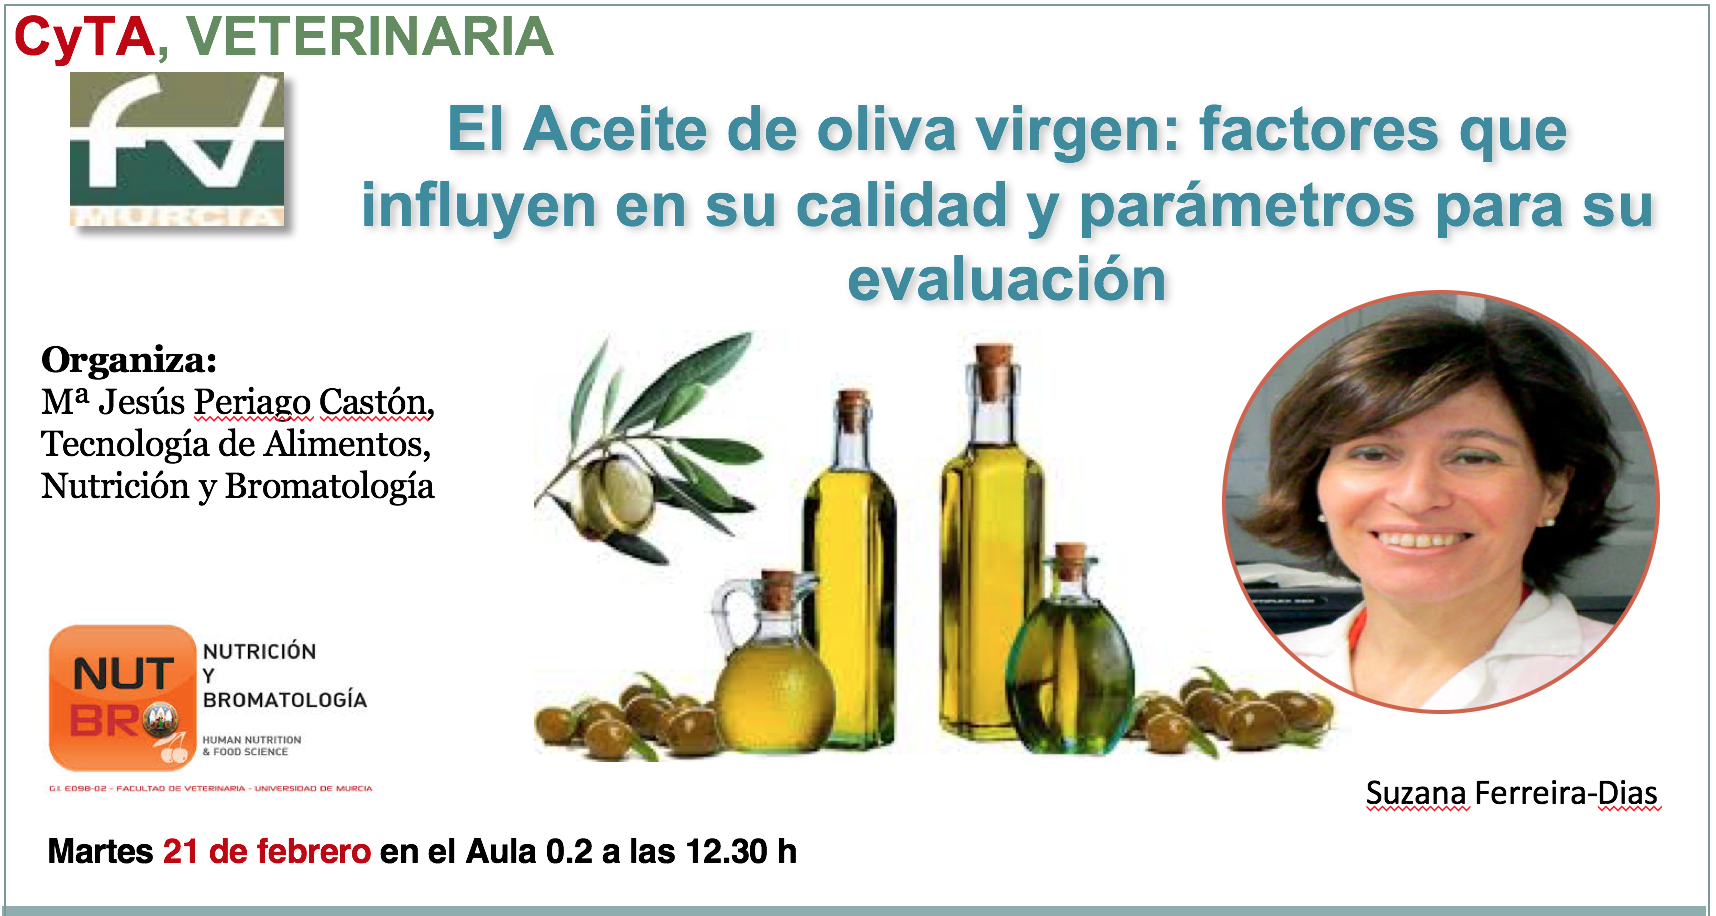 El Aceite de oliva virgen: factores que influyen en su calidad y parámetros para su evaluación